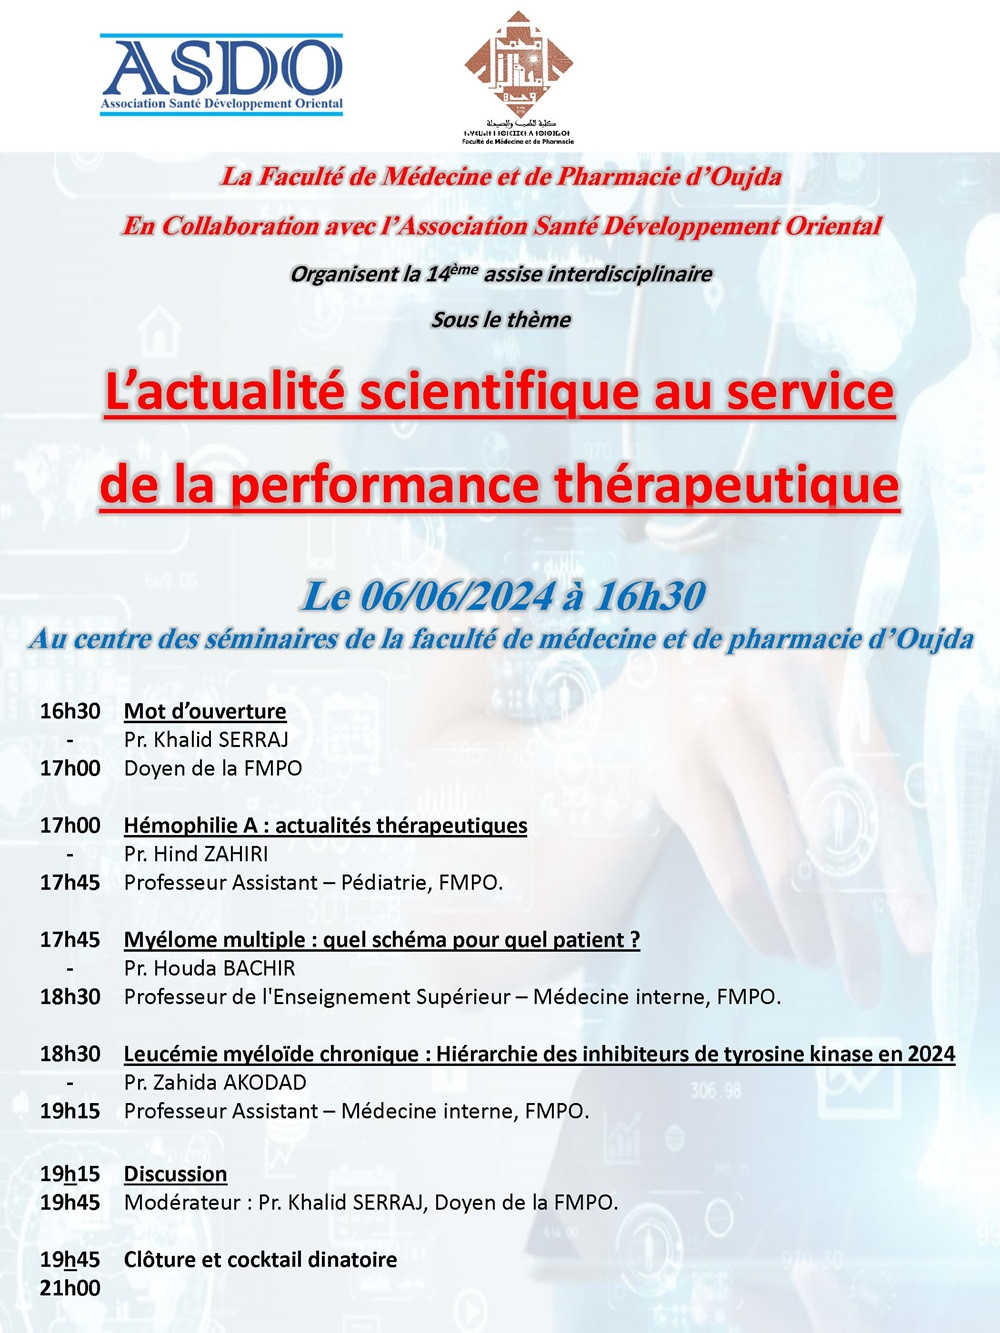 14ème assise Interdisciplinaire - L’actualité scientifique au service de la performance thérapeutique